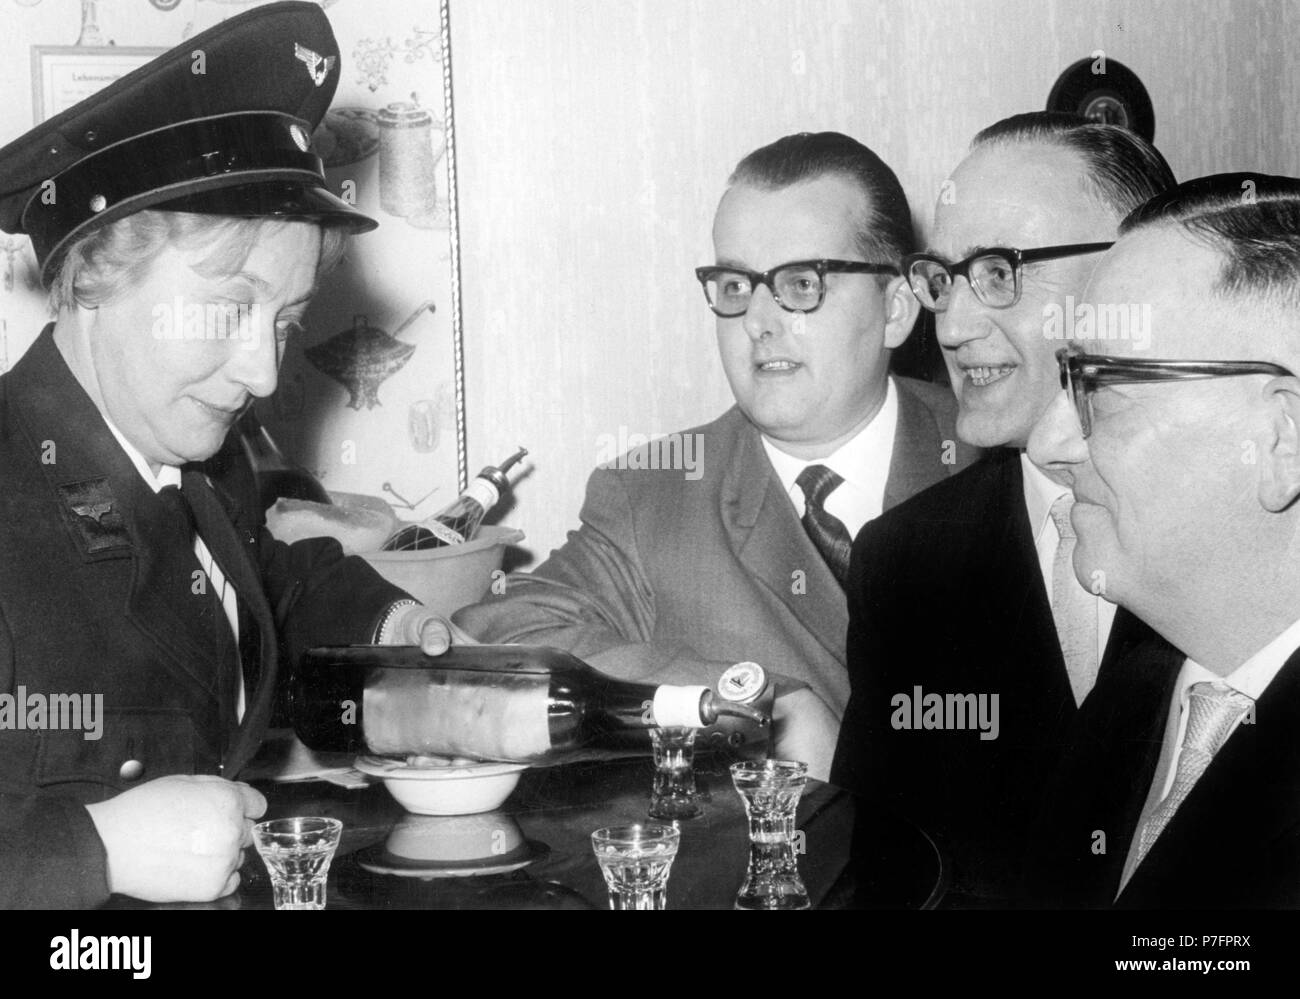 Un permis pour trois hommes à lunettes 50's, années 50, lieu exact inconnu, Allemagne Banque D'Images